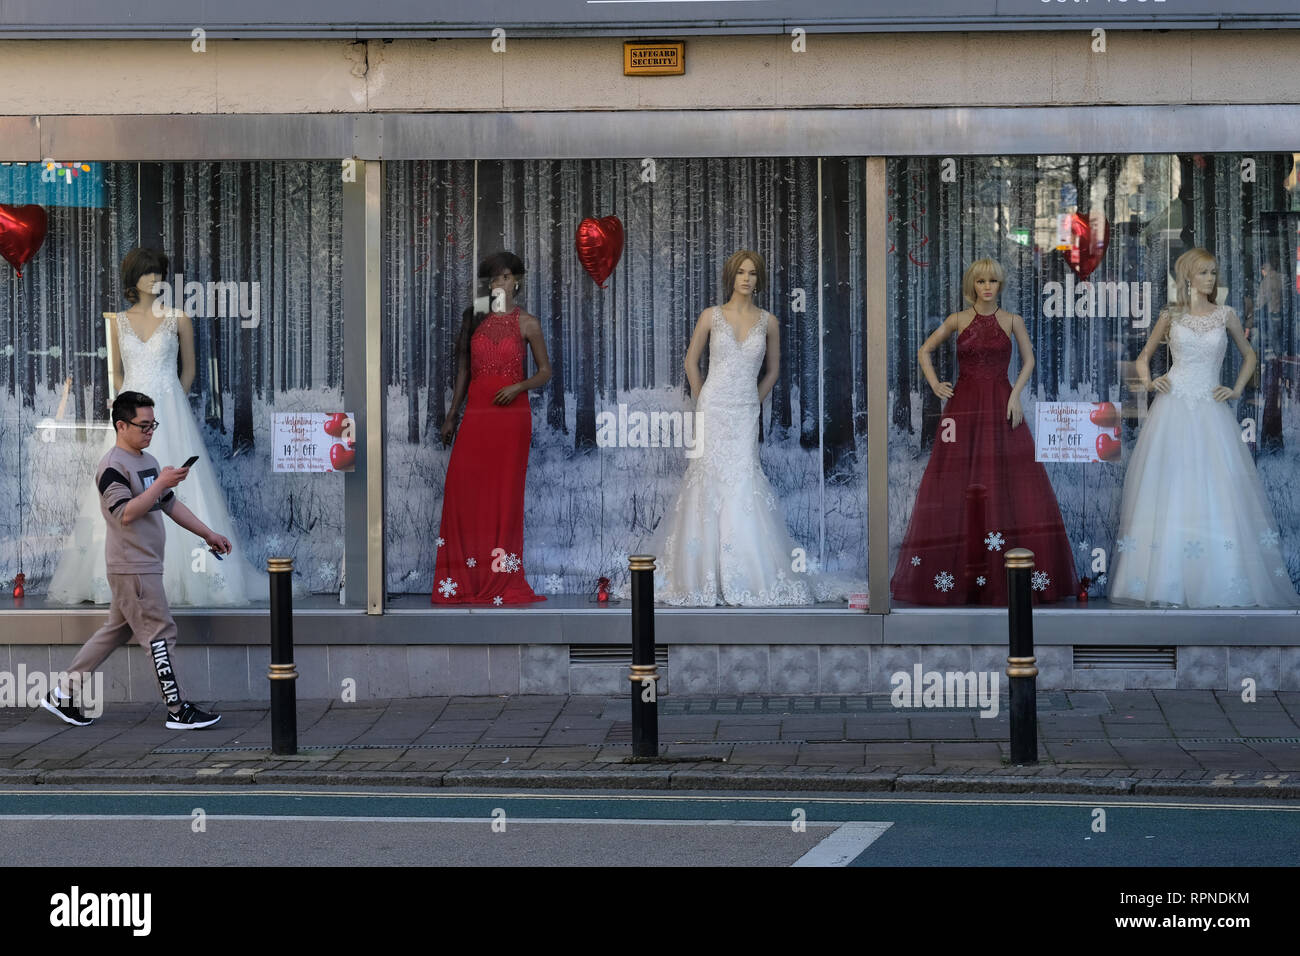 Un homme passe devant un magasin de robes de mariage à Exeter, Royaume-Uni. Banque D'Images